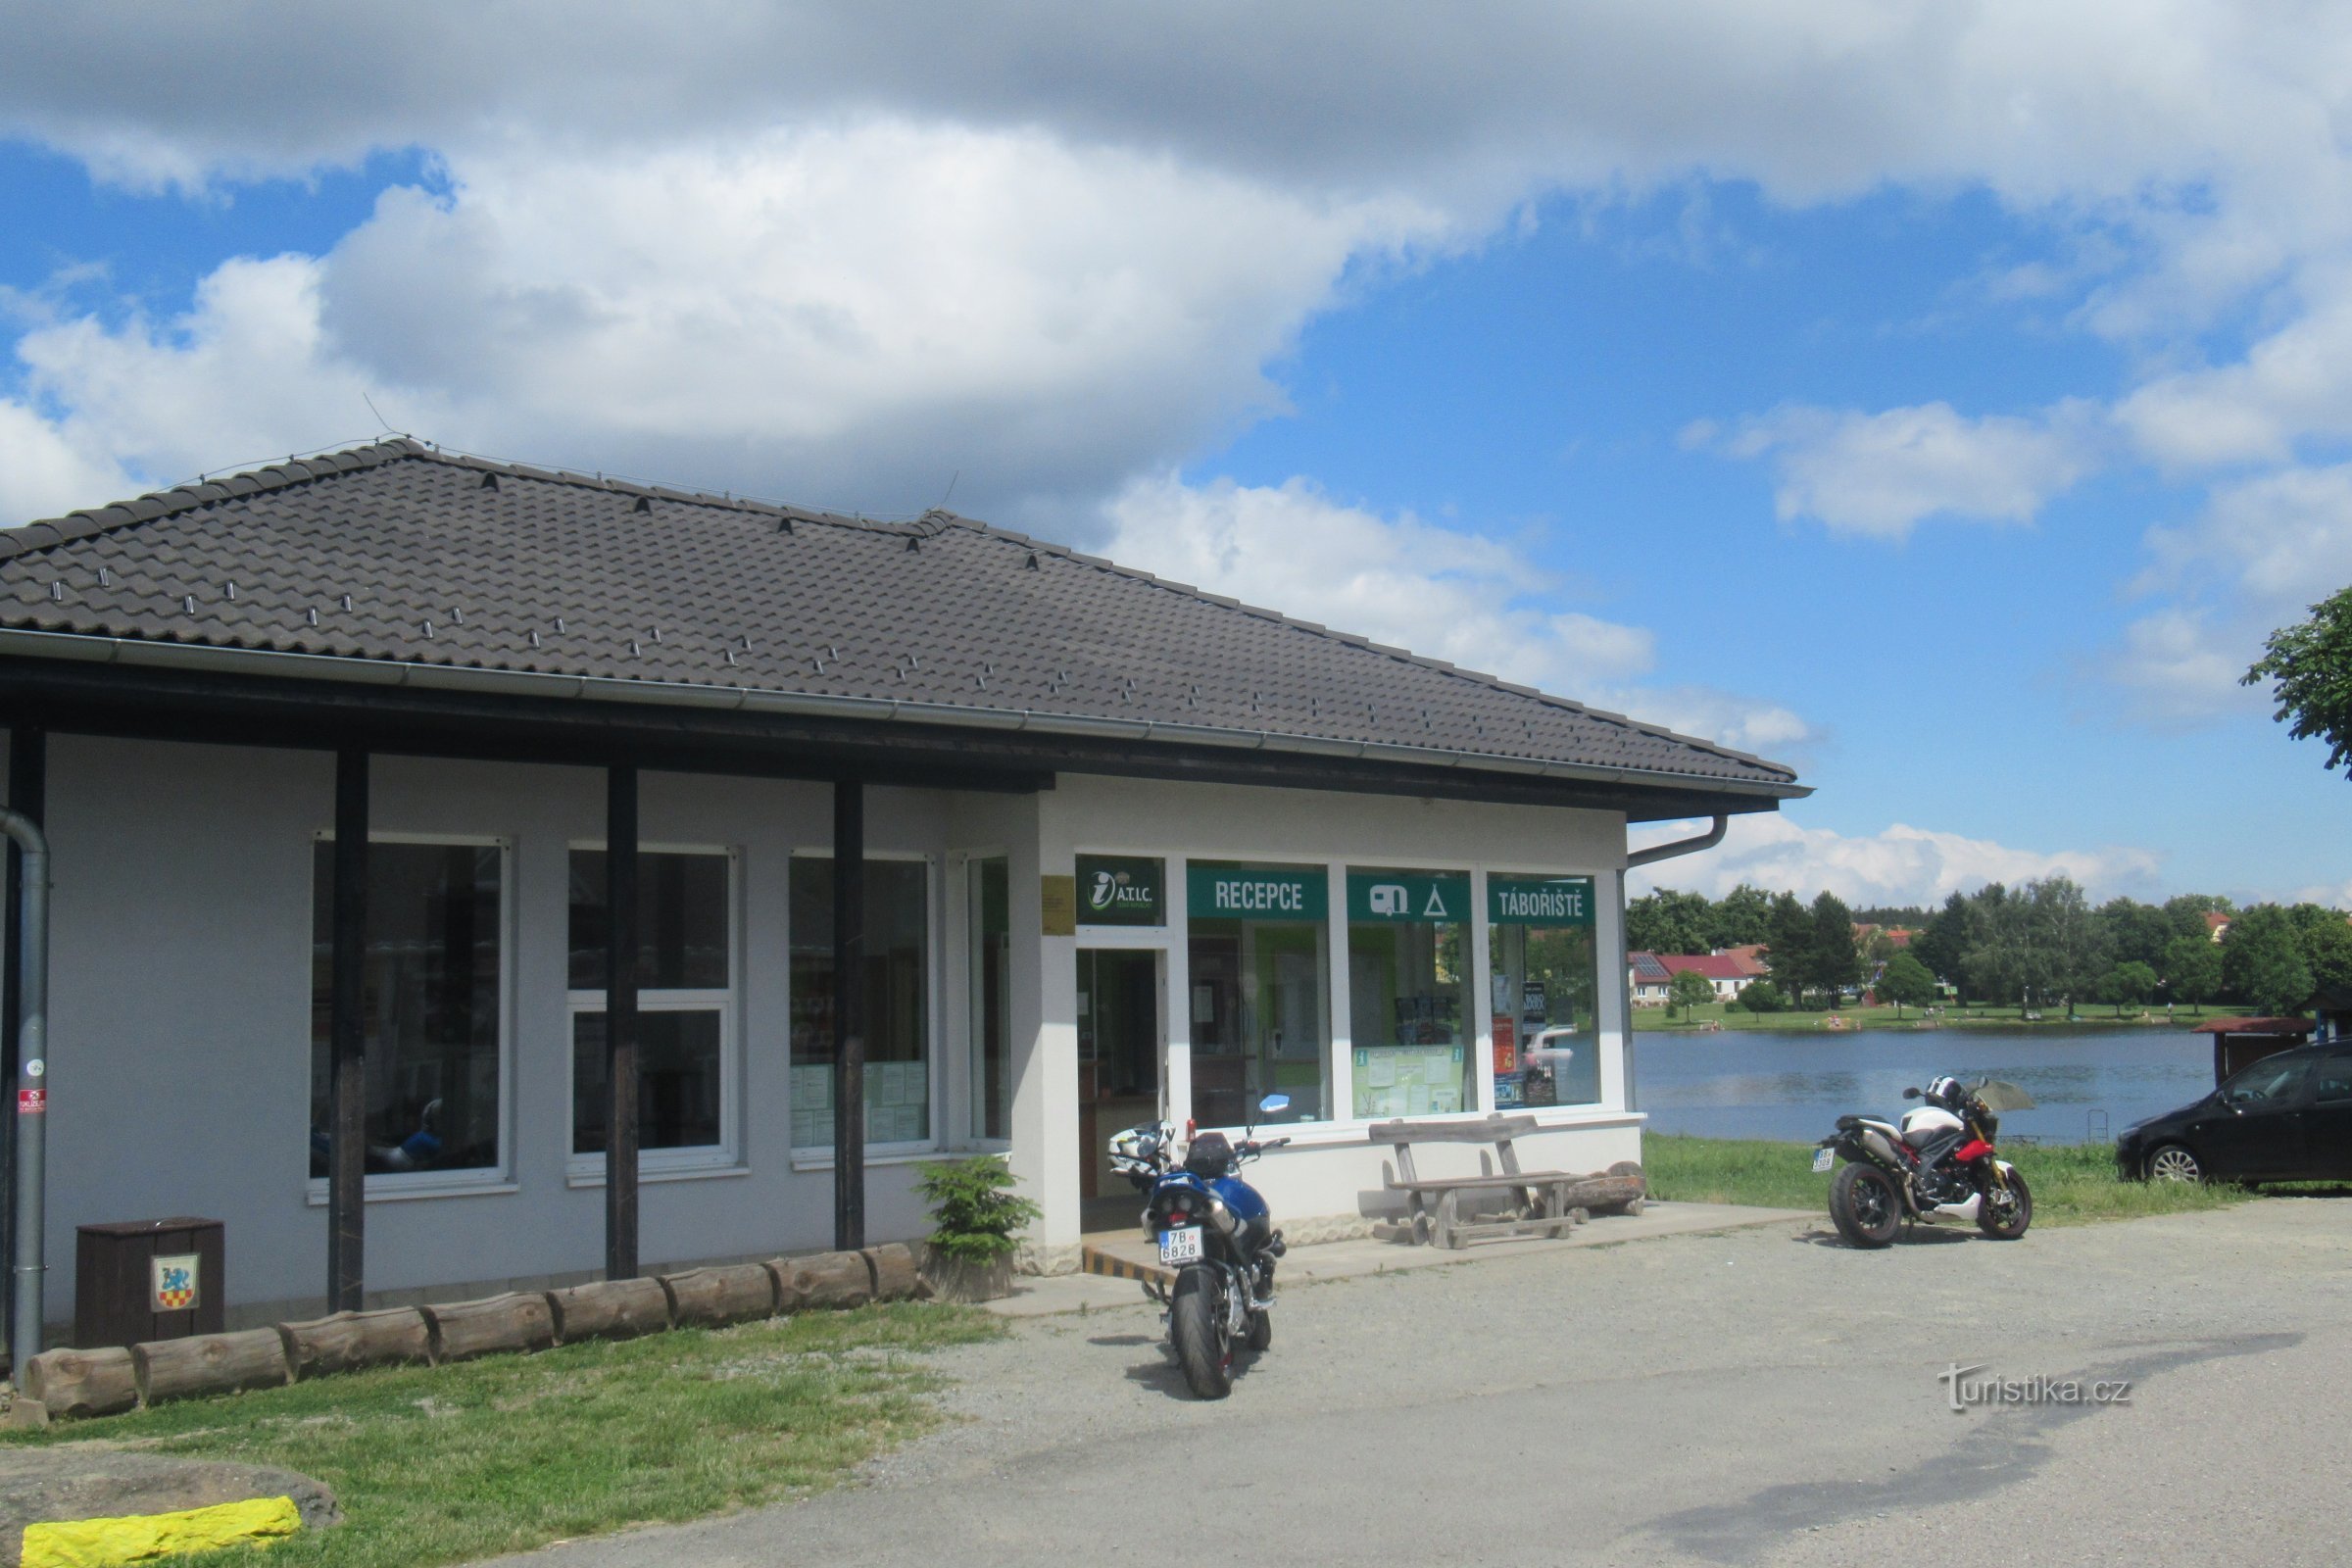 Suchý - Turistično informacijski center